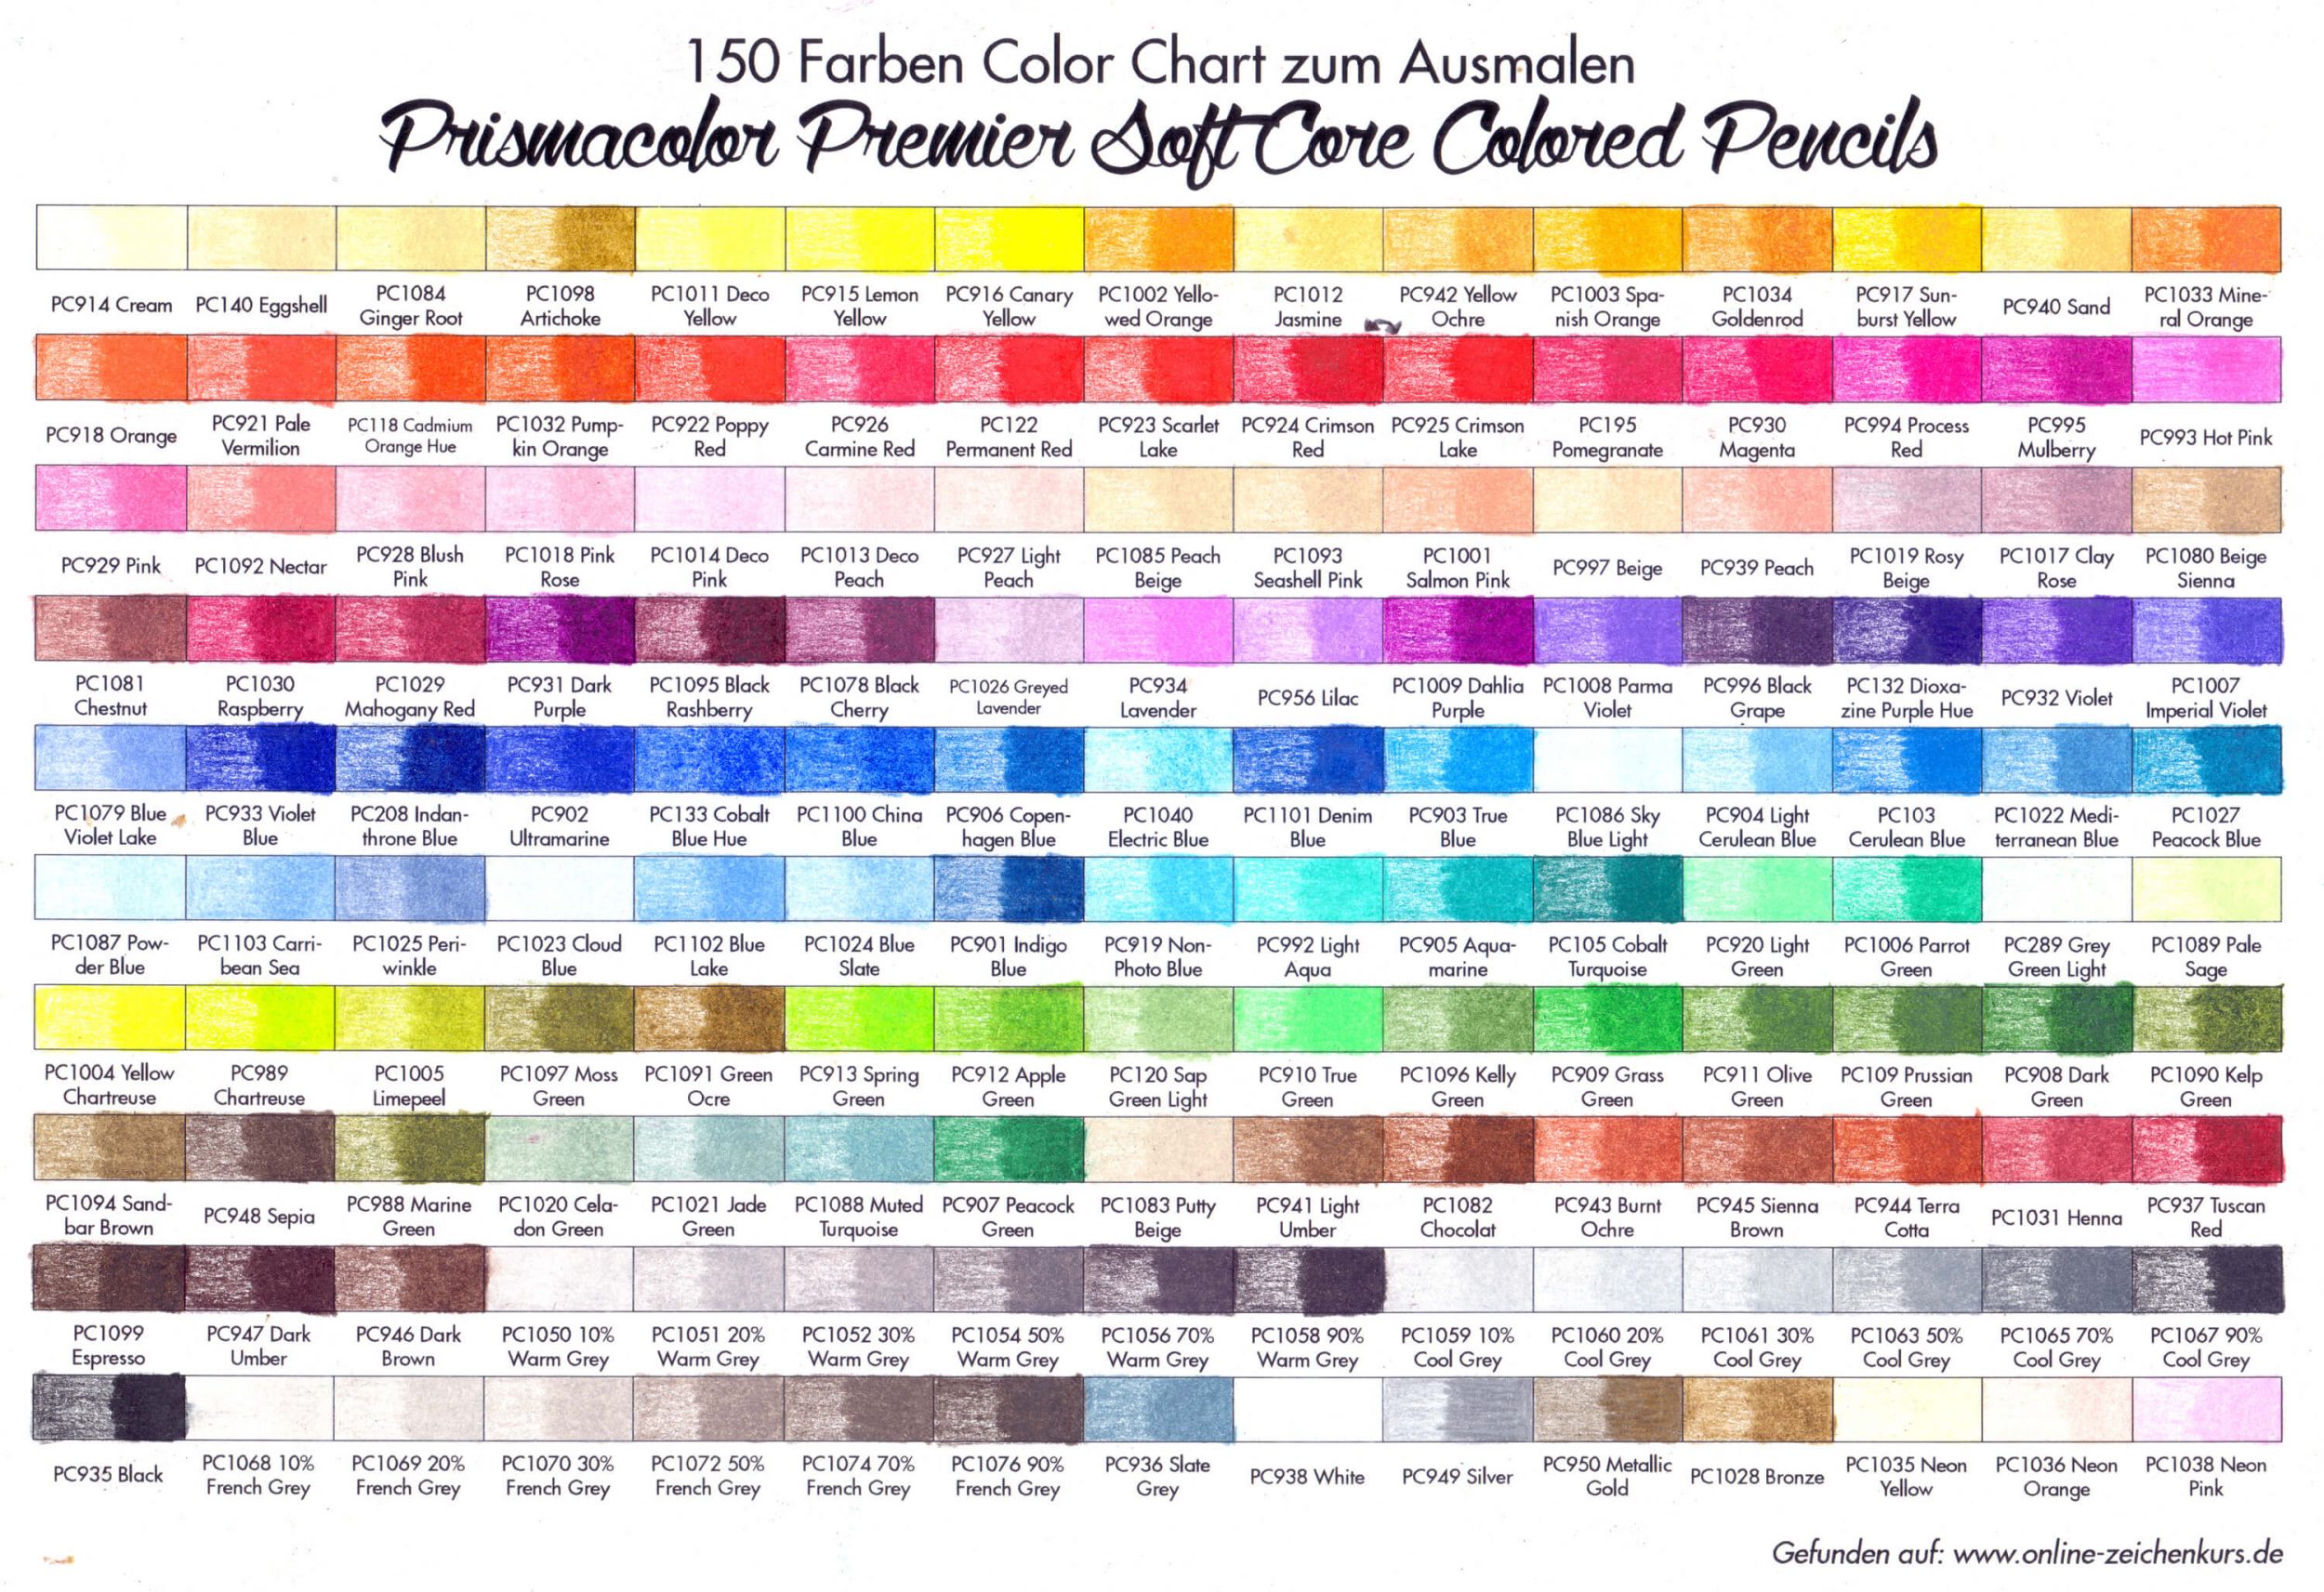 Prismacolor Color Chart ausgemalt alle 150 Farben